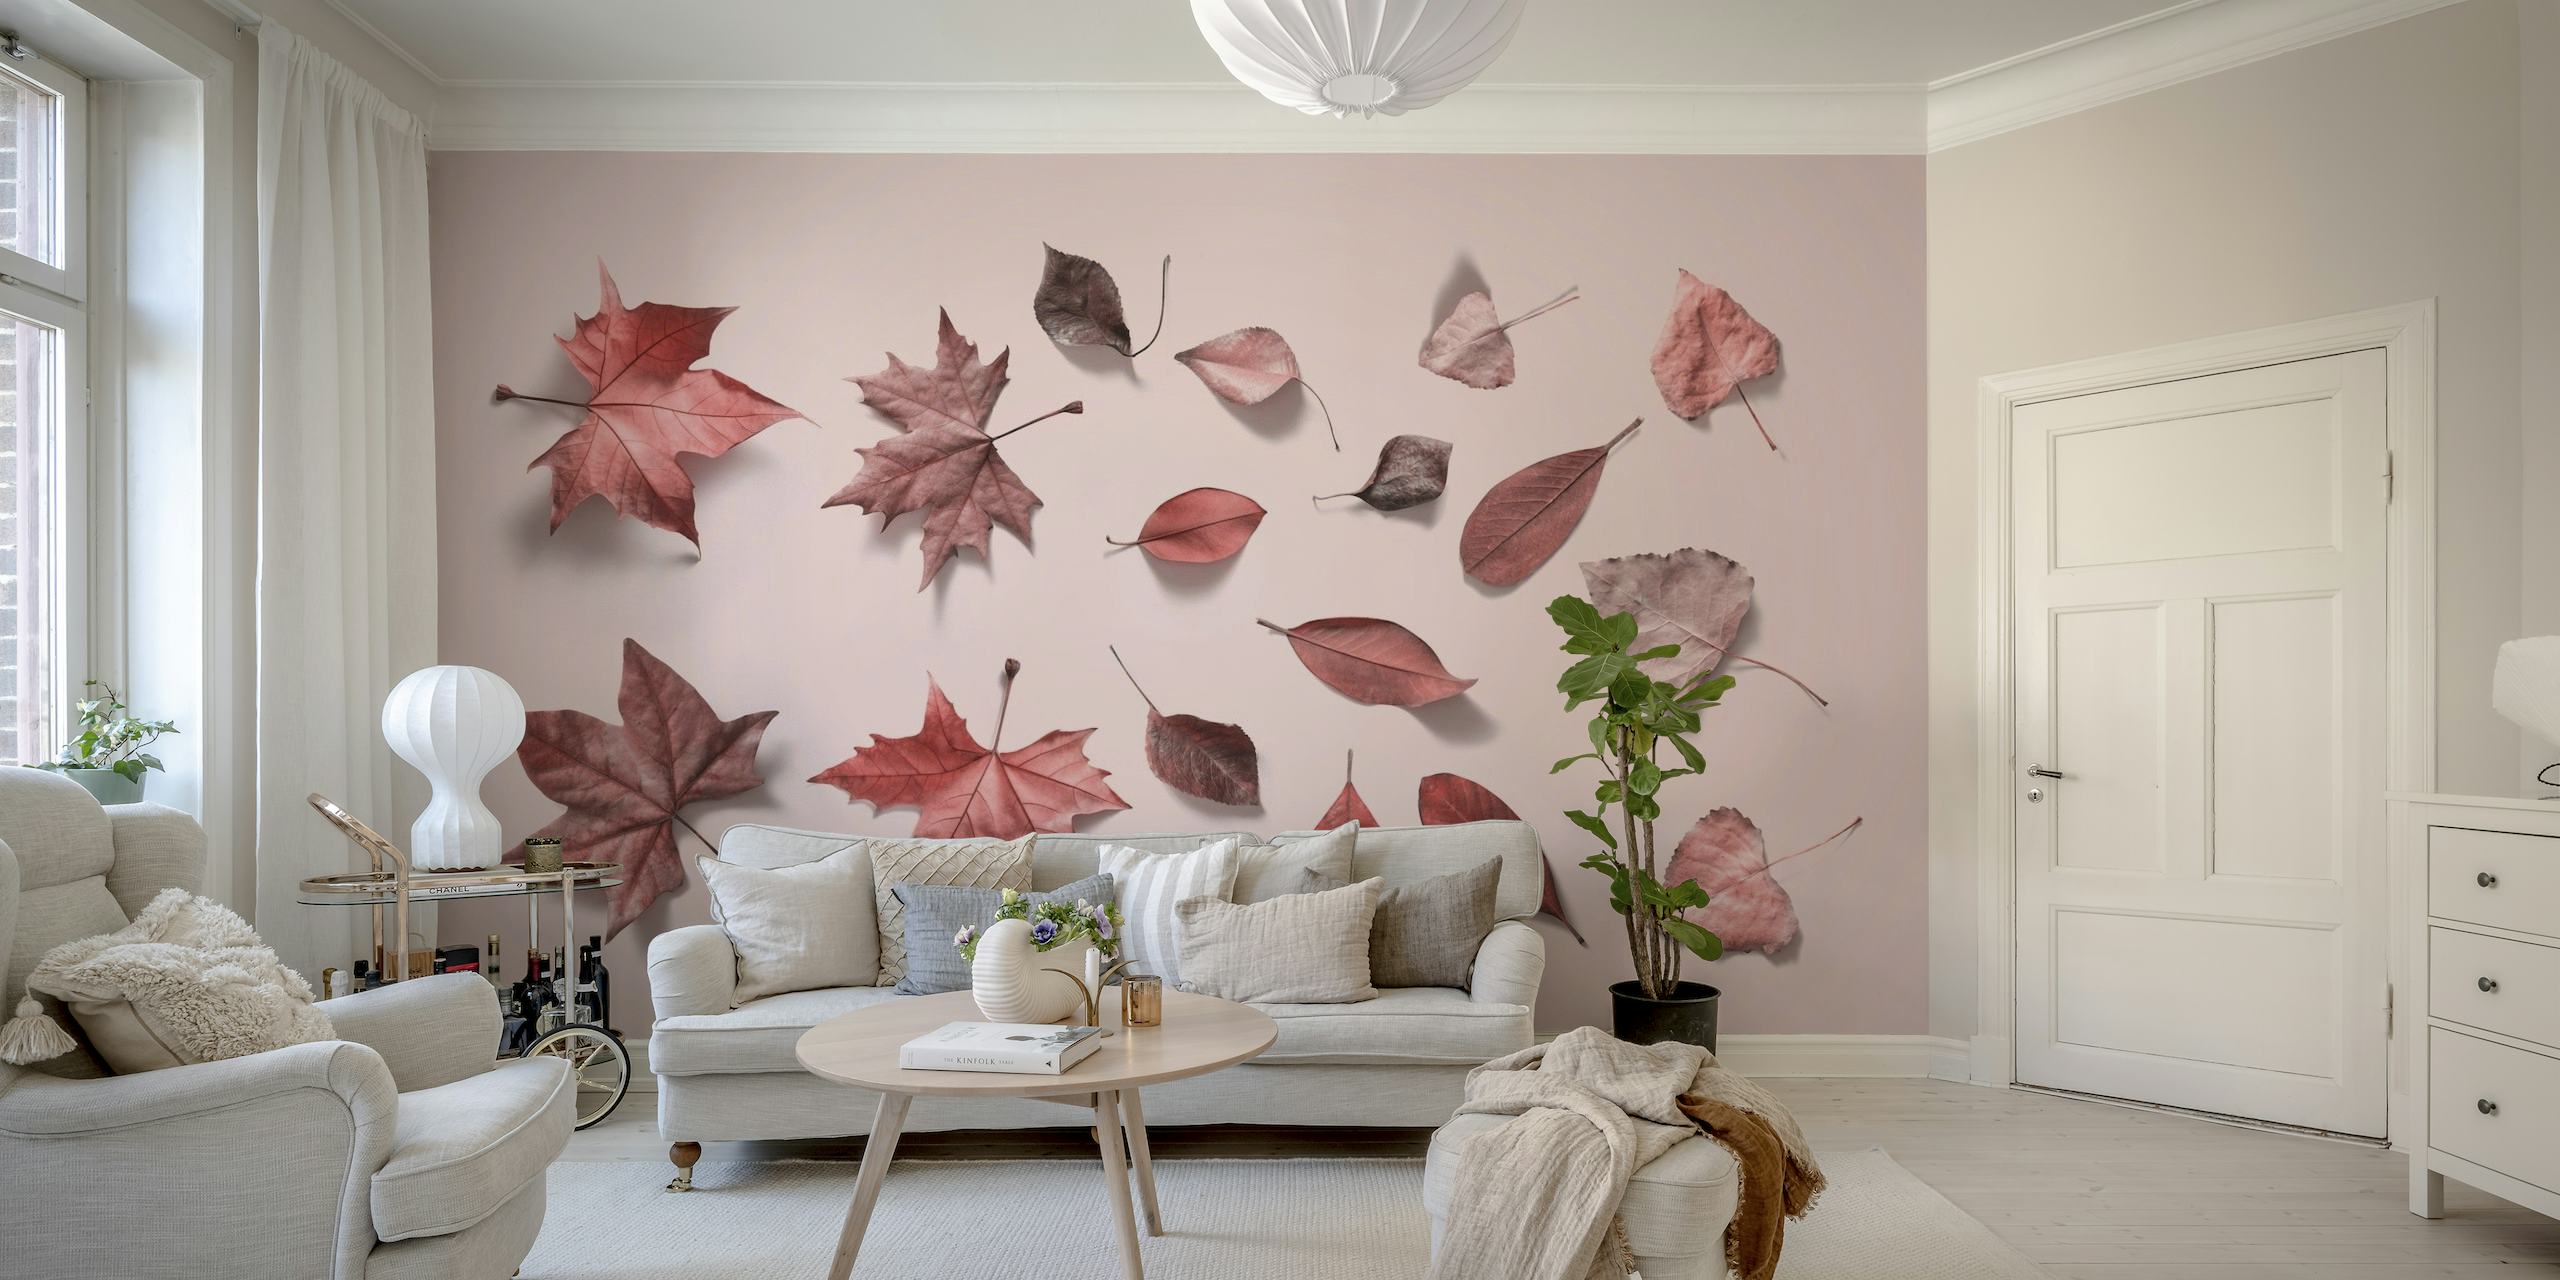 Svjetloružičasti zidni mural s razbacanim rasporedom jesenskog lišća u raznim ružičastim nijansama.